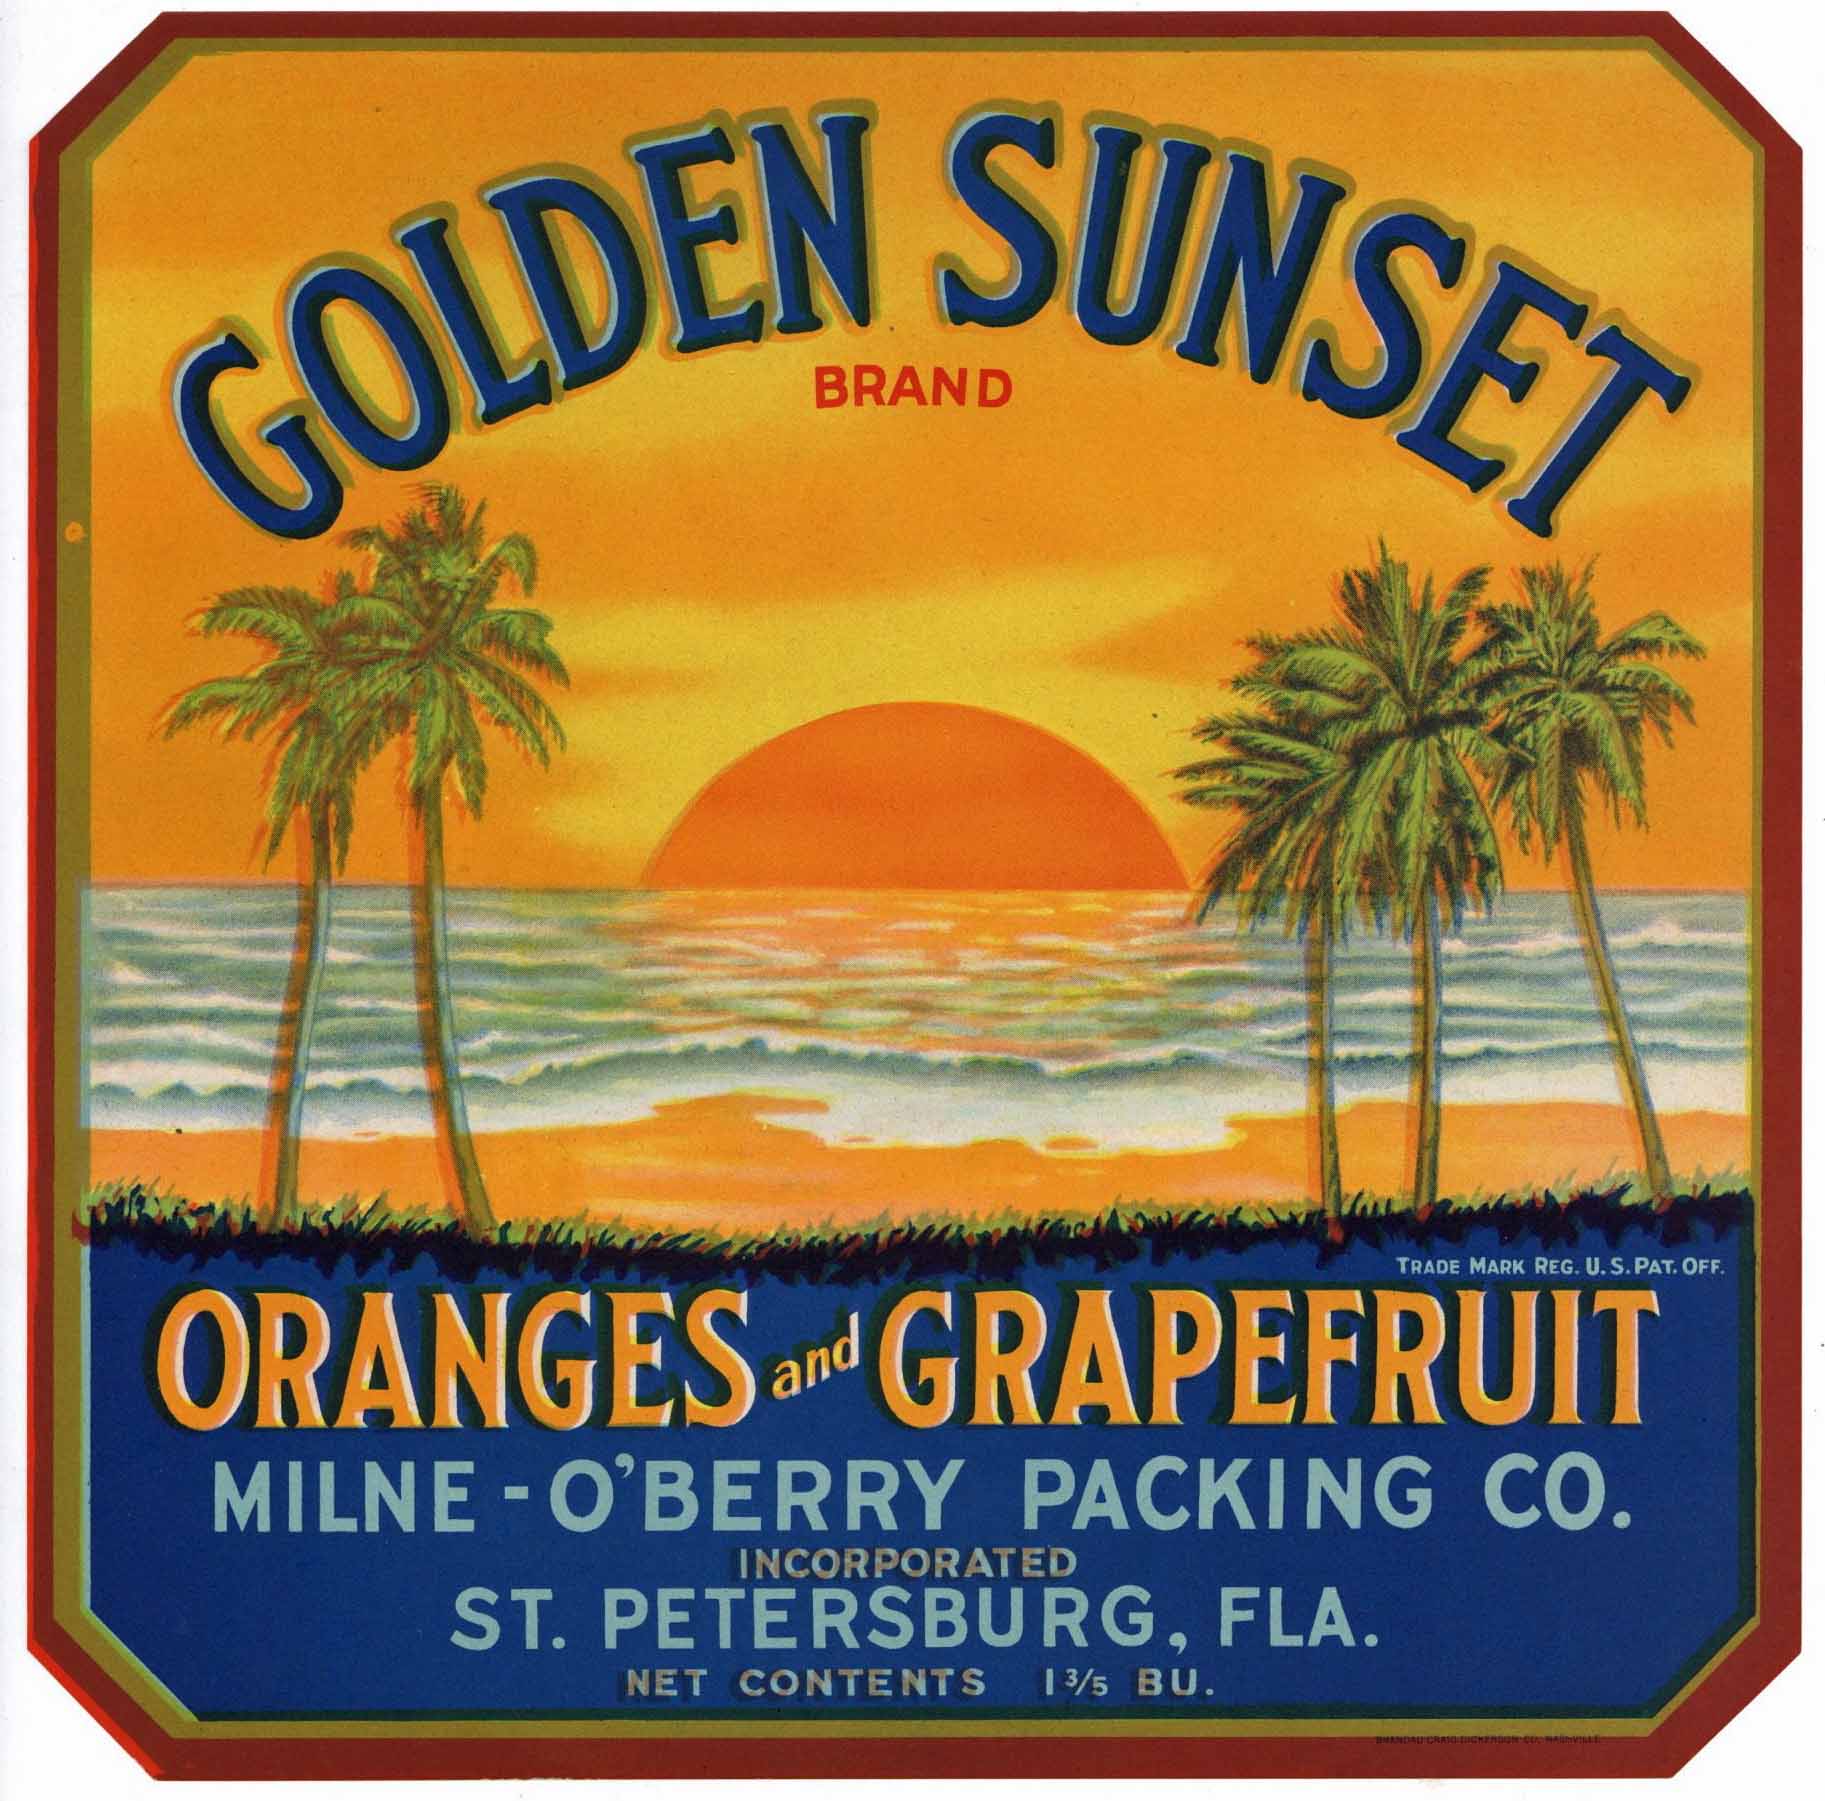 Golden Sunset Brand Vintage St. Petersburg Florida Citrus Crate Label